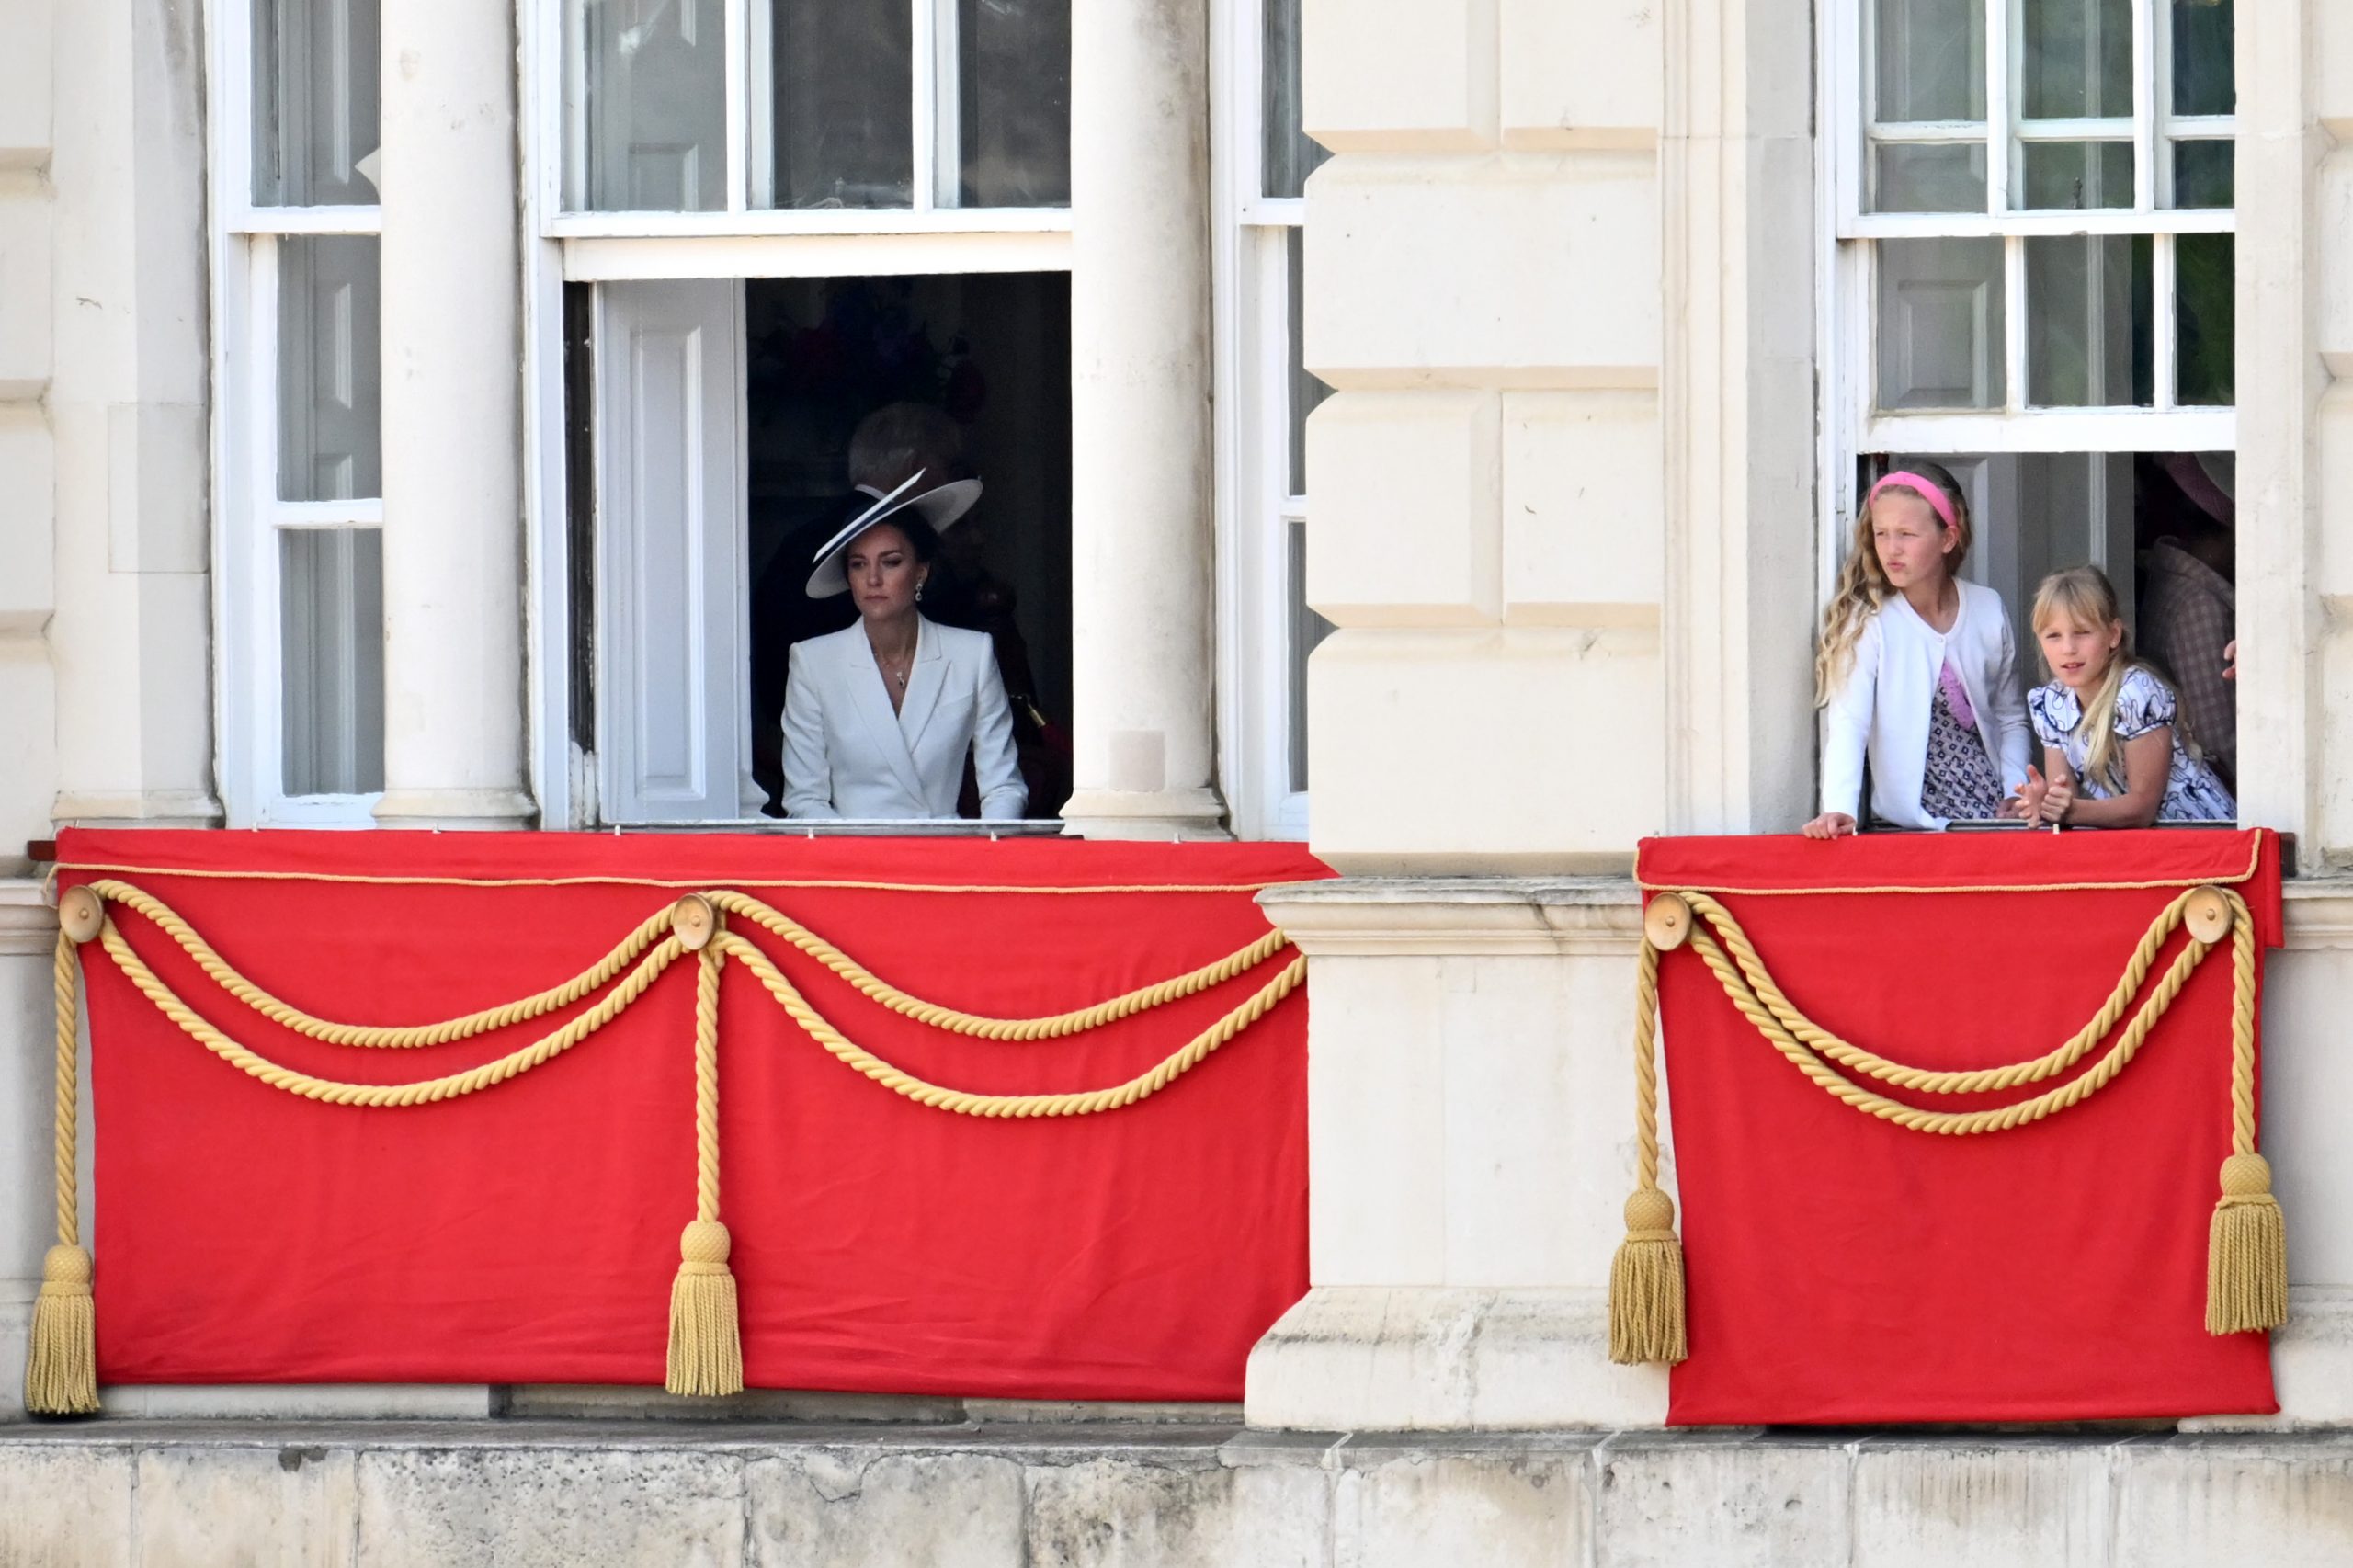 8. kép: Savannah Phillips és Isla Phillips kukucskál a Buckingham-palota ablakán a platinajubileumon (fotó: Jeff J Mitchell - WPA Pool/Getty Images)